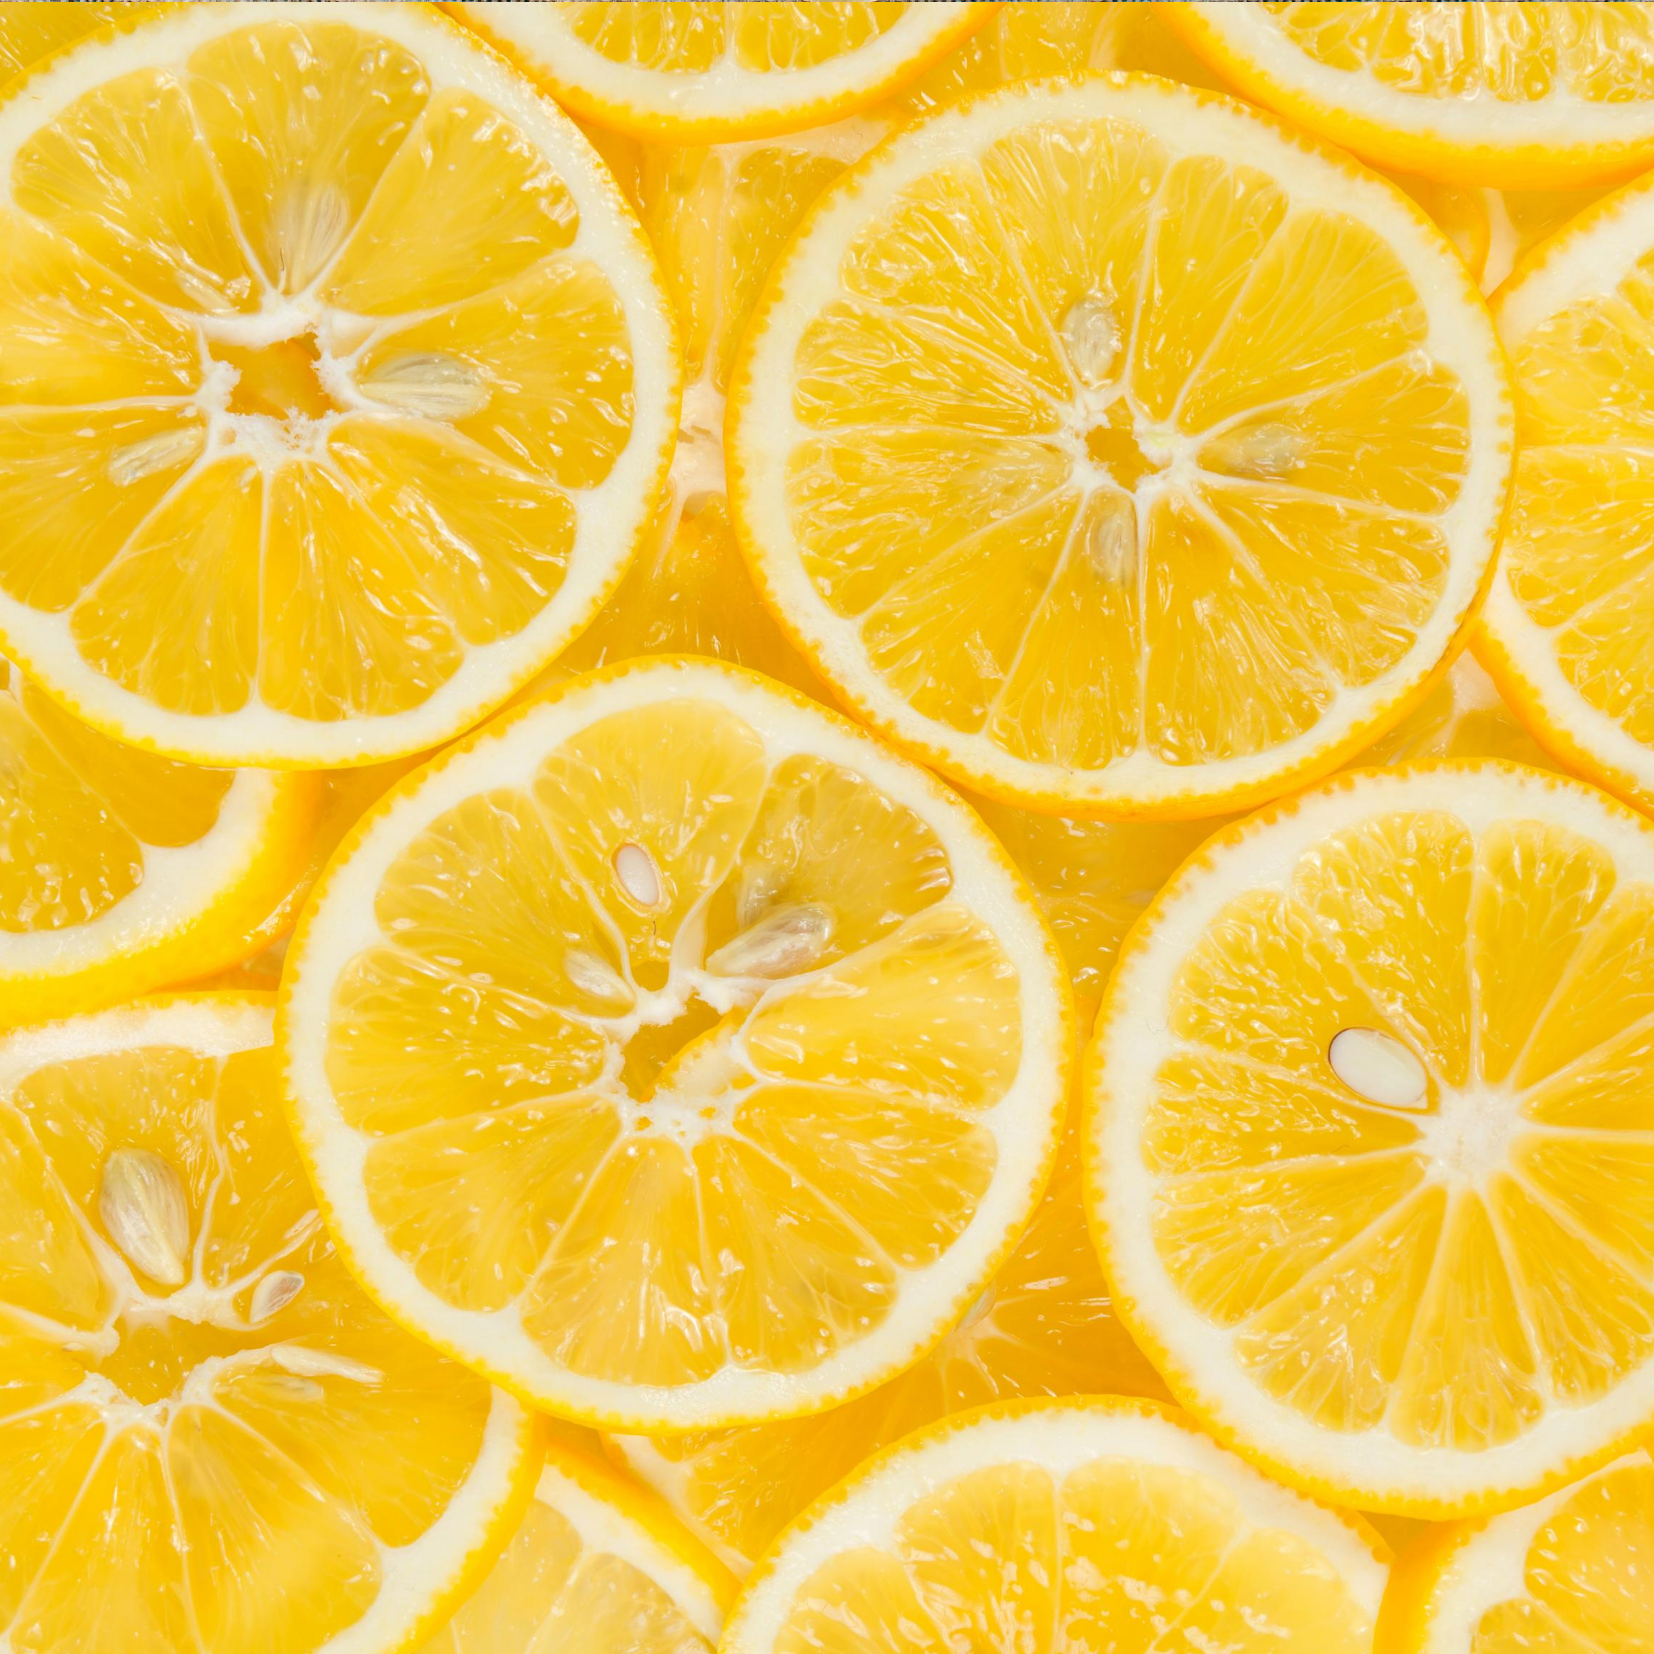 Eating Disorder - Lemon slices